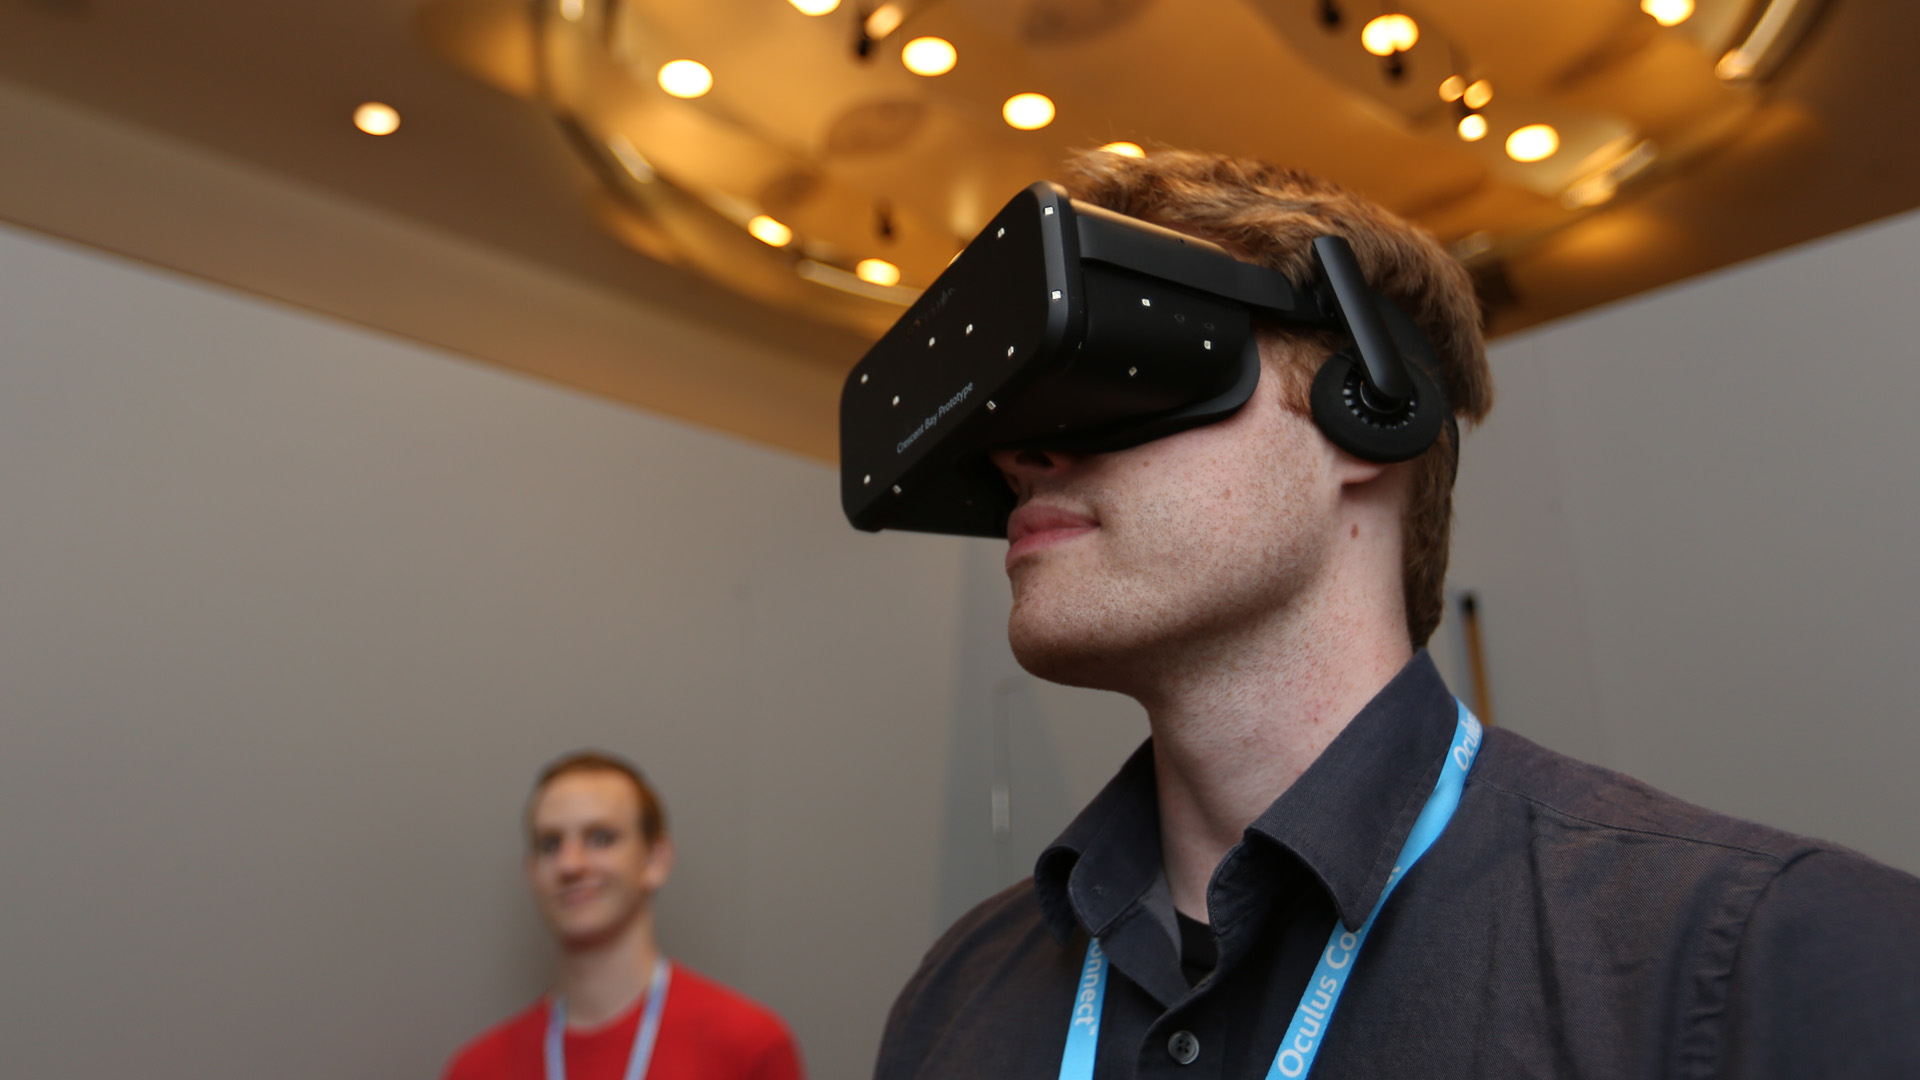 True vr. Oculus певец. Лысый Окулус. Джон Кармак представил ранний прототип Oculus Rift. Oculus Dexter правый глаз.